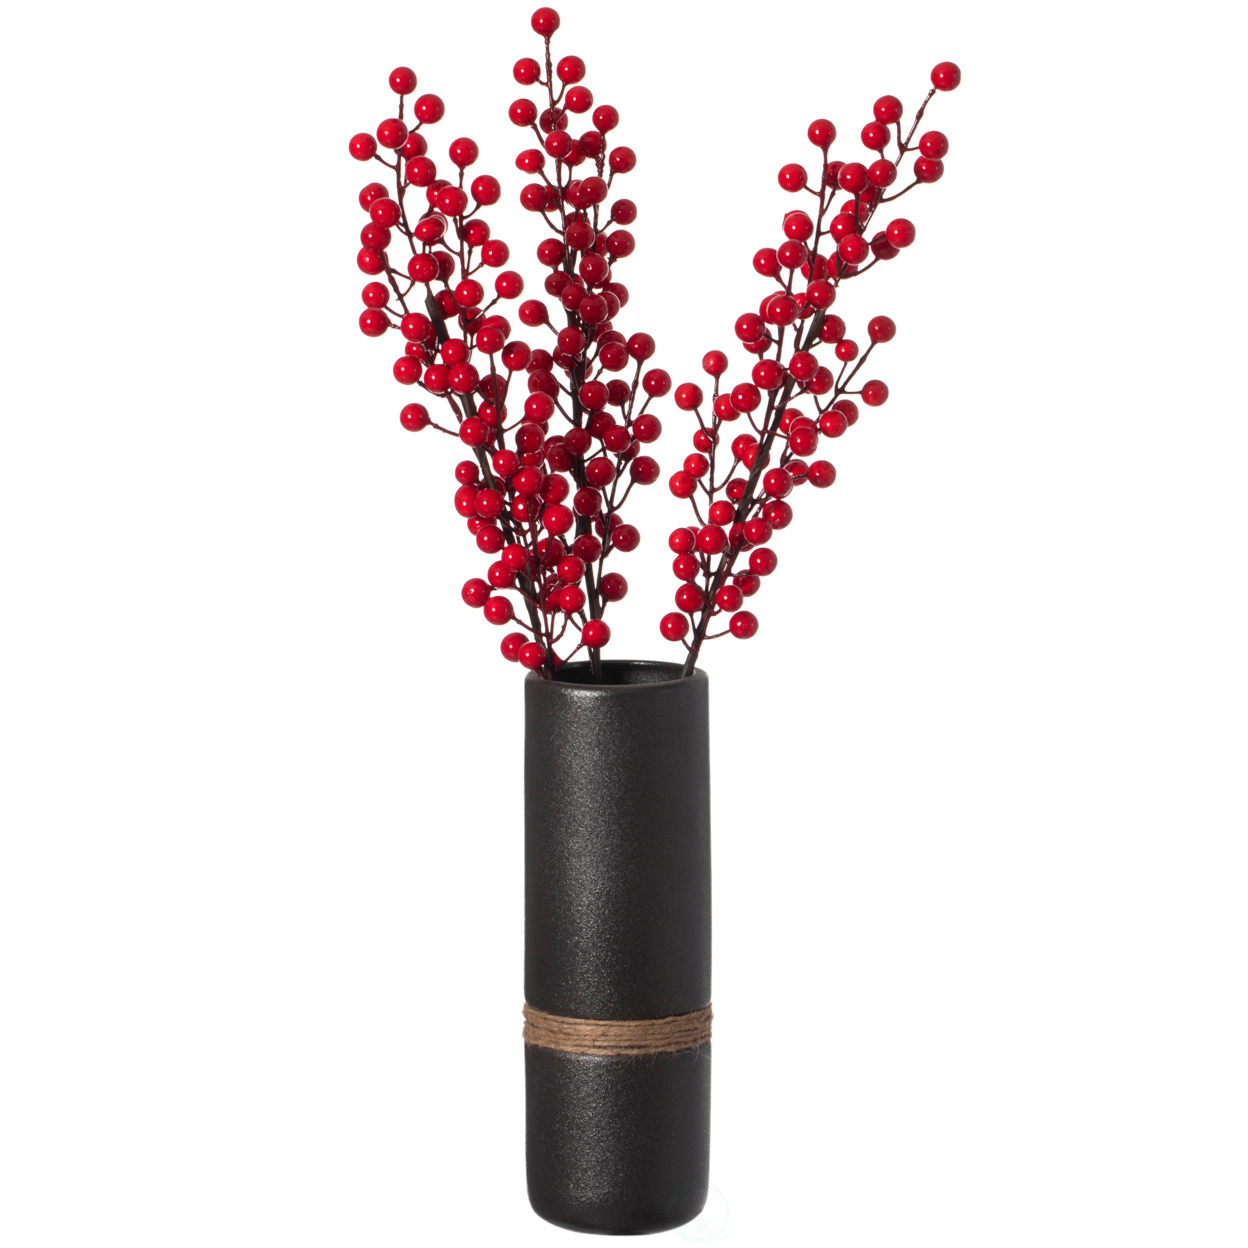 Decorative Modern Ceramic Cylinder Shape Table Vase Flower Holder With Rope - Large Black